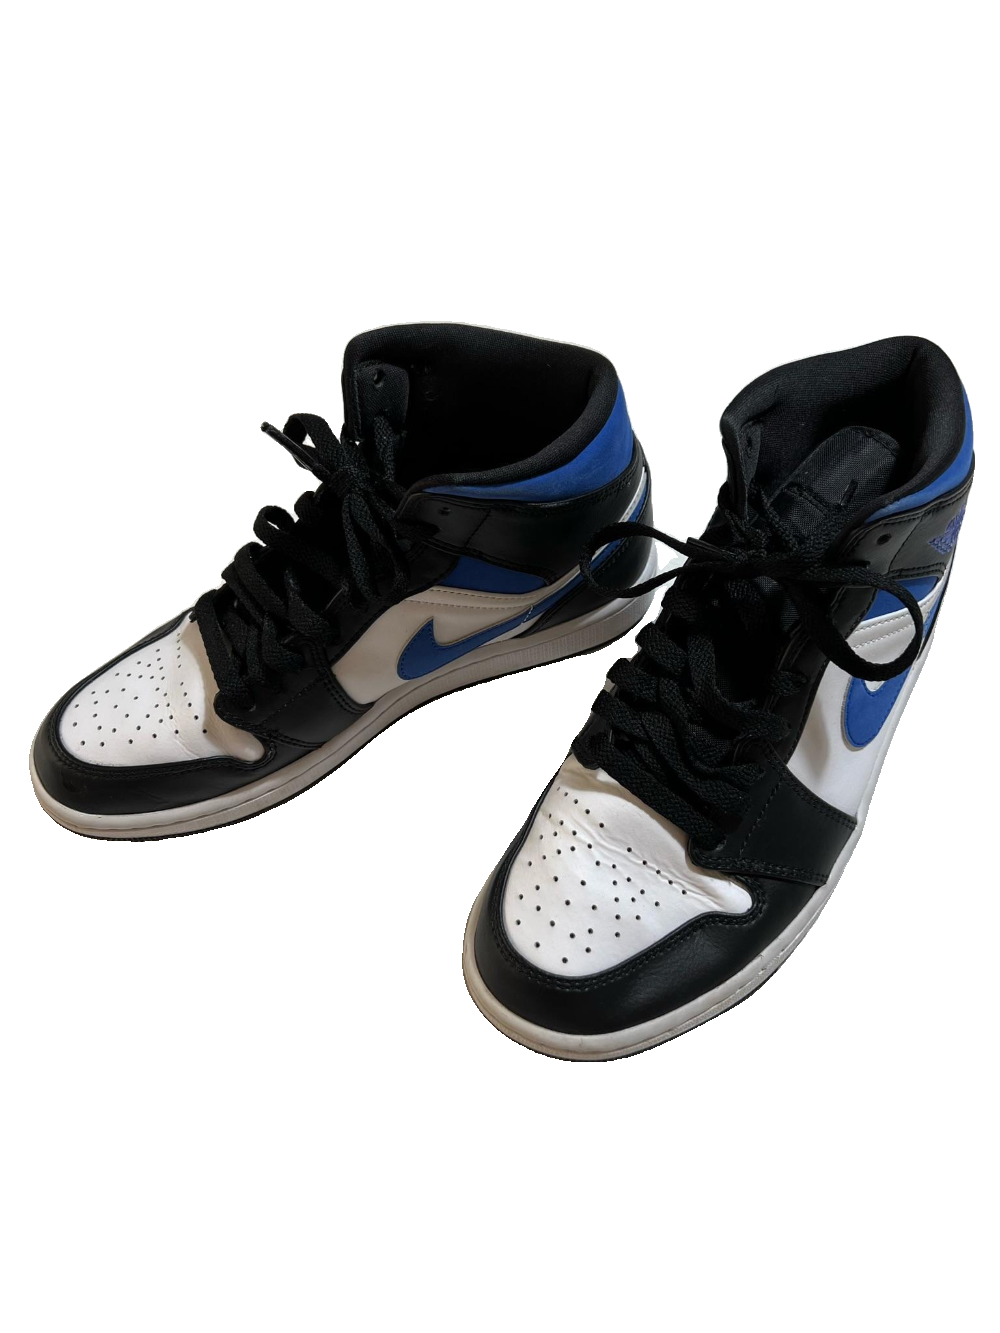 Nike- Black and Blue Jordans